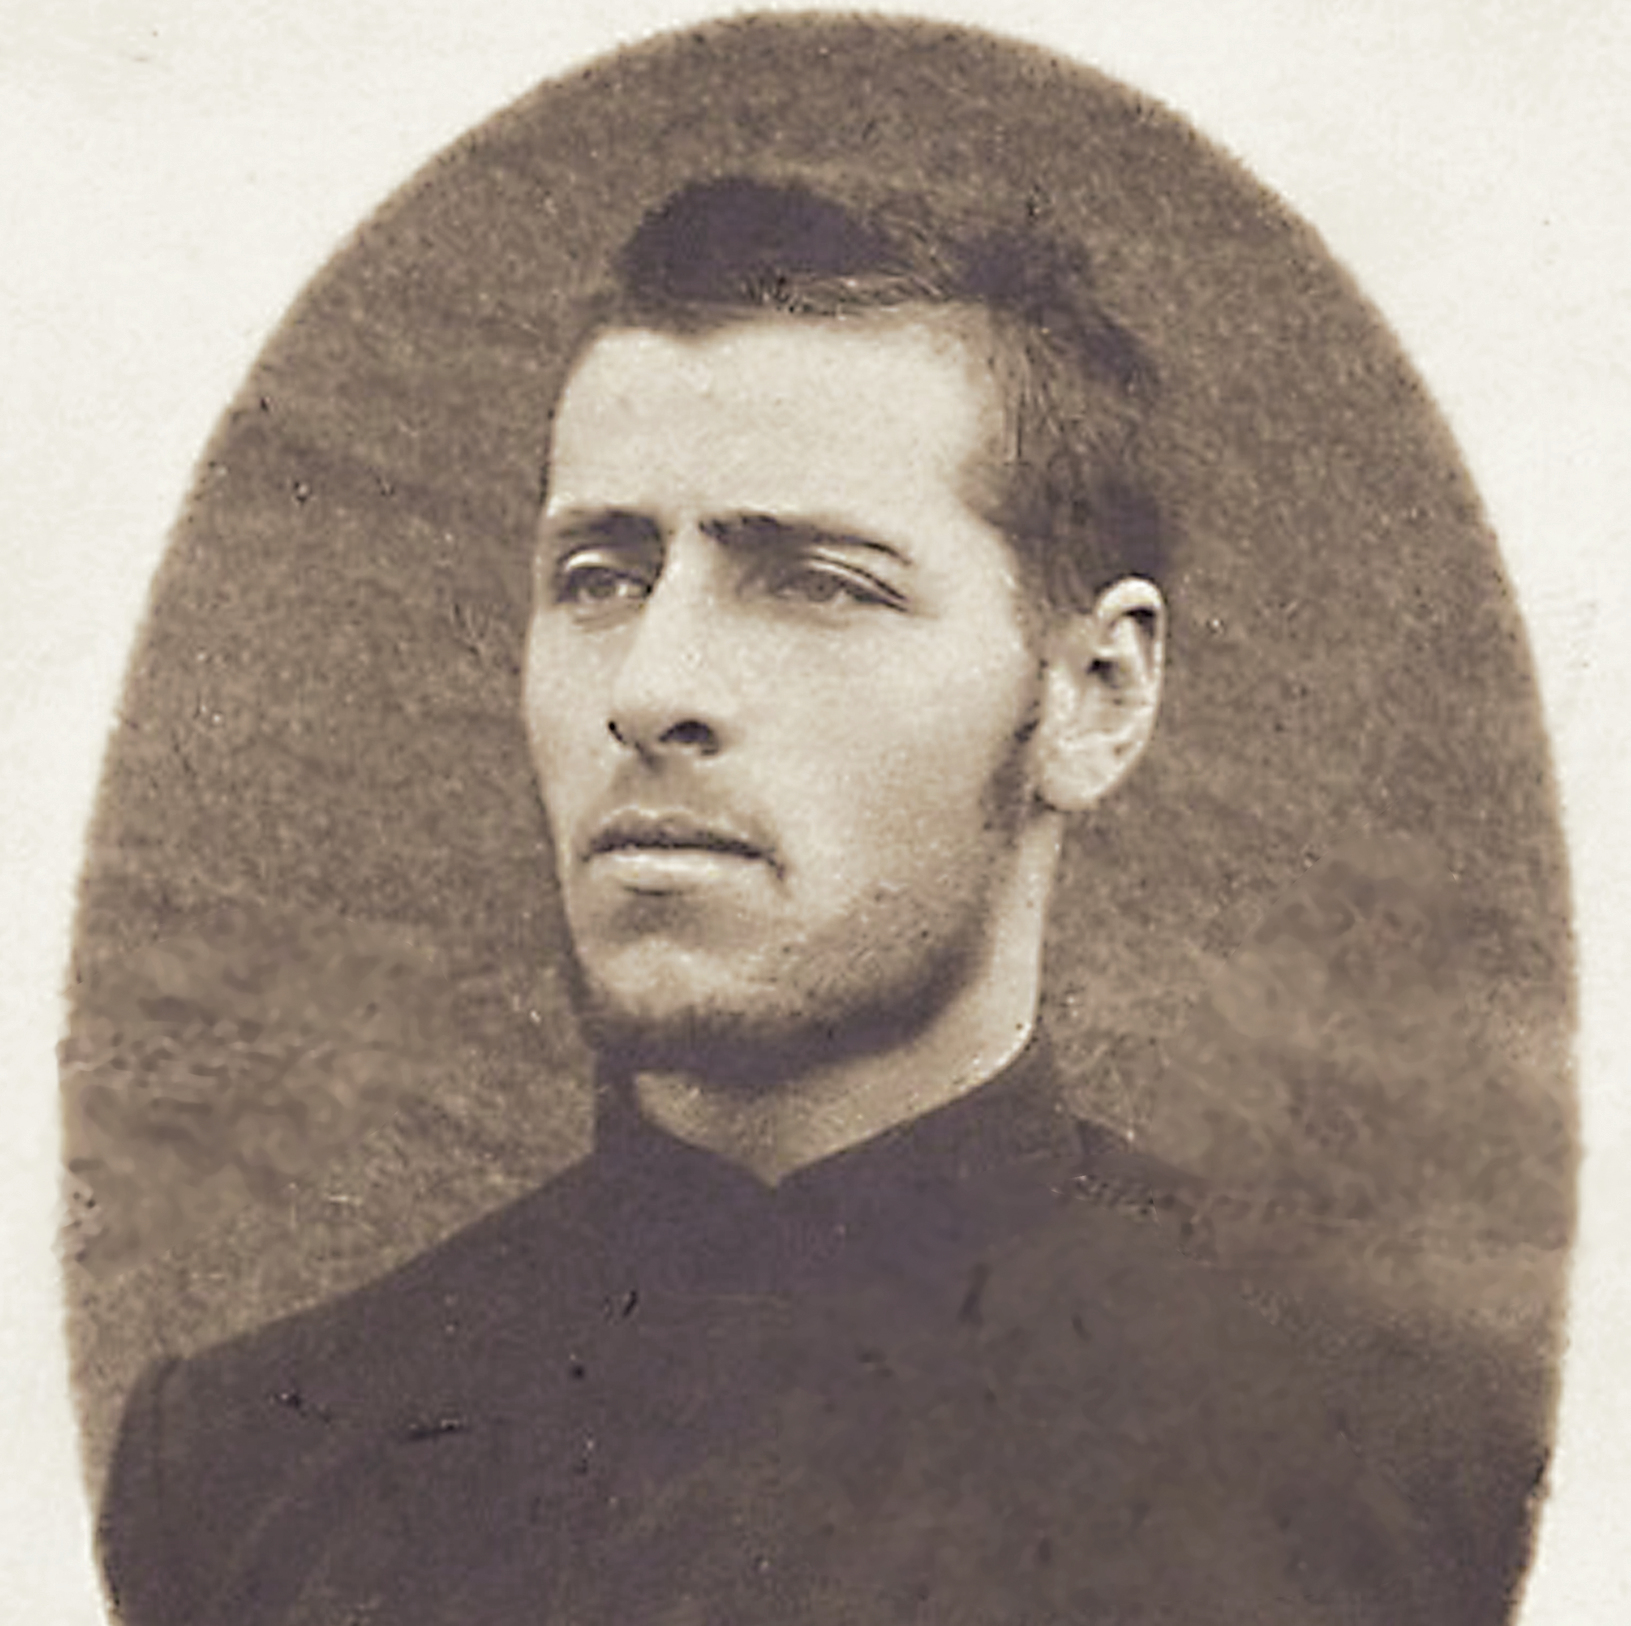 טרומפלדור בן ה־24 בשבי היפני, 1904 . התגייס לצבא הצאר כי לא רצה שיחשבו שהוא "פחדן יהודי"